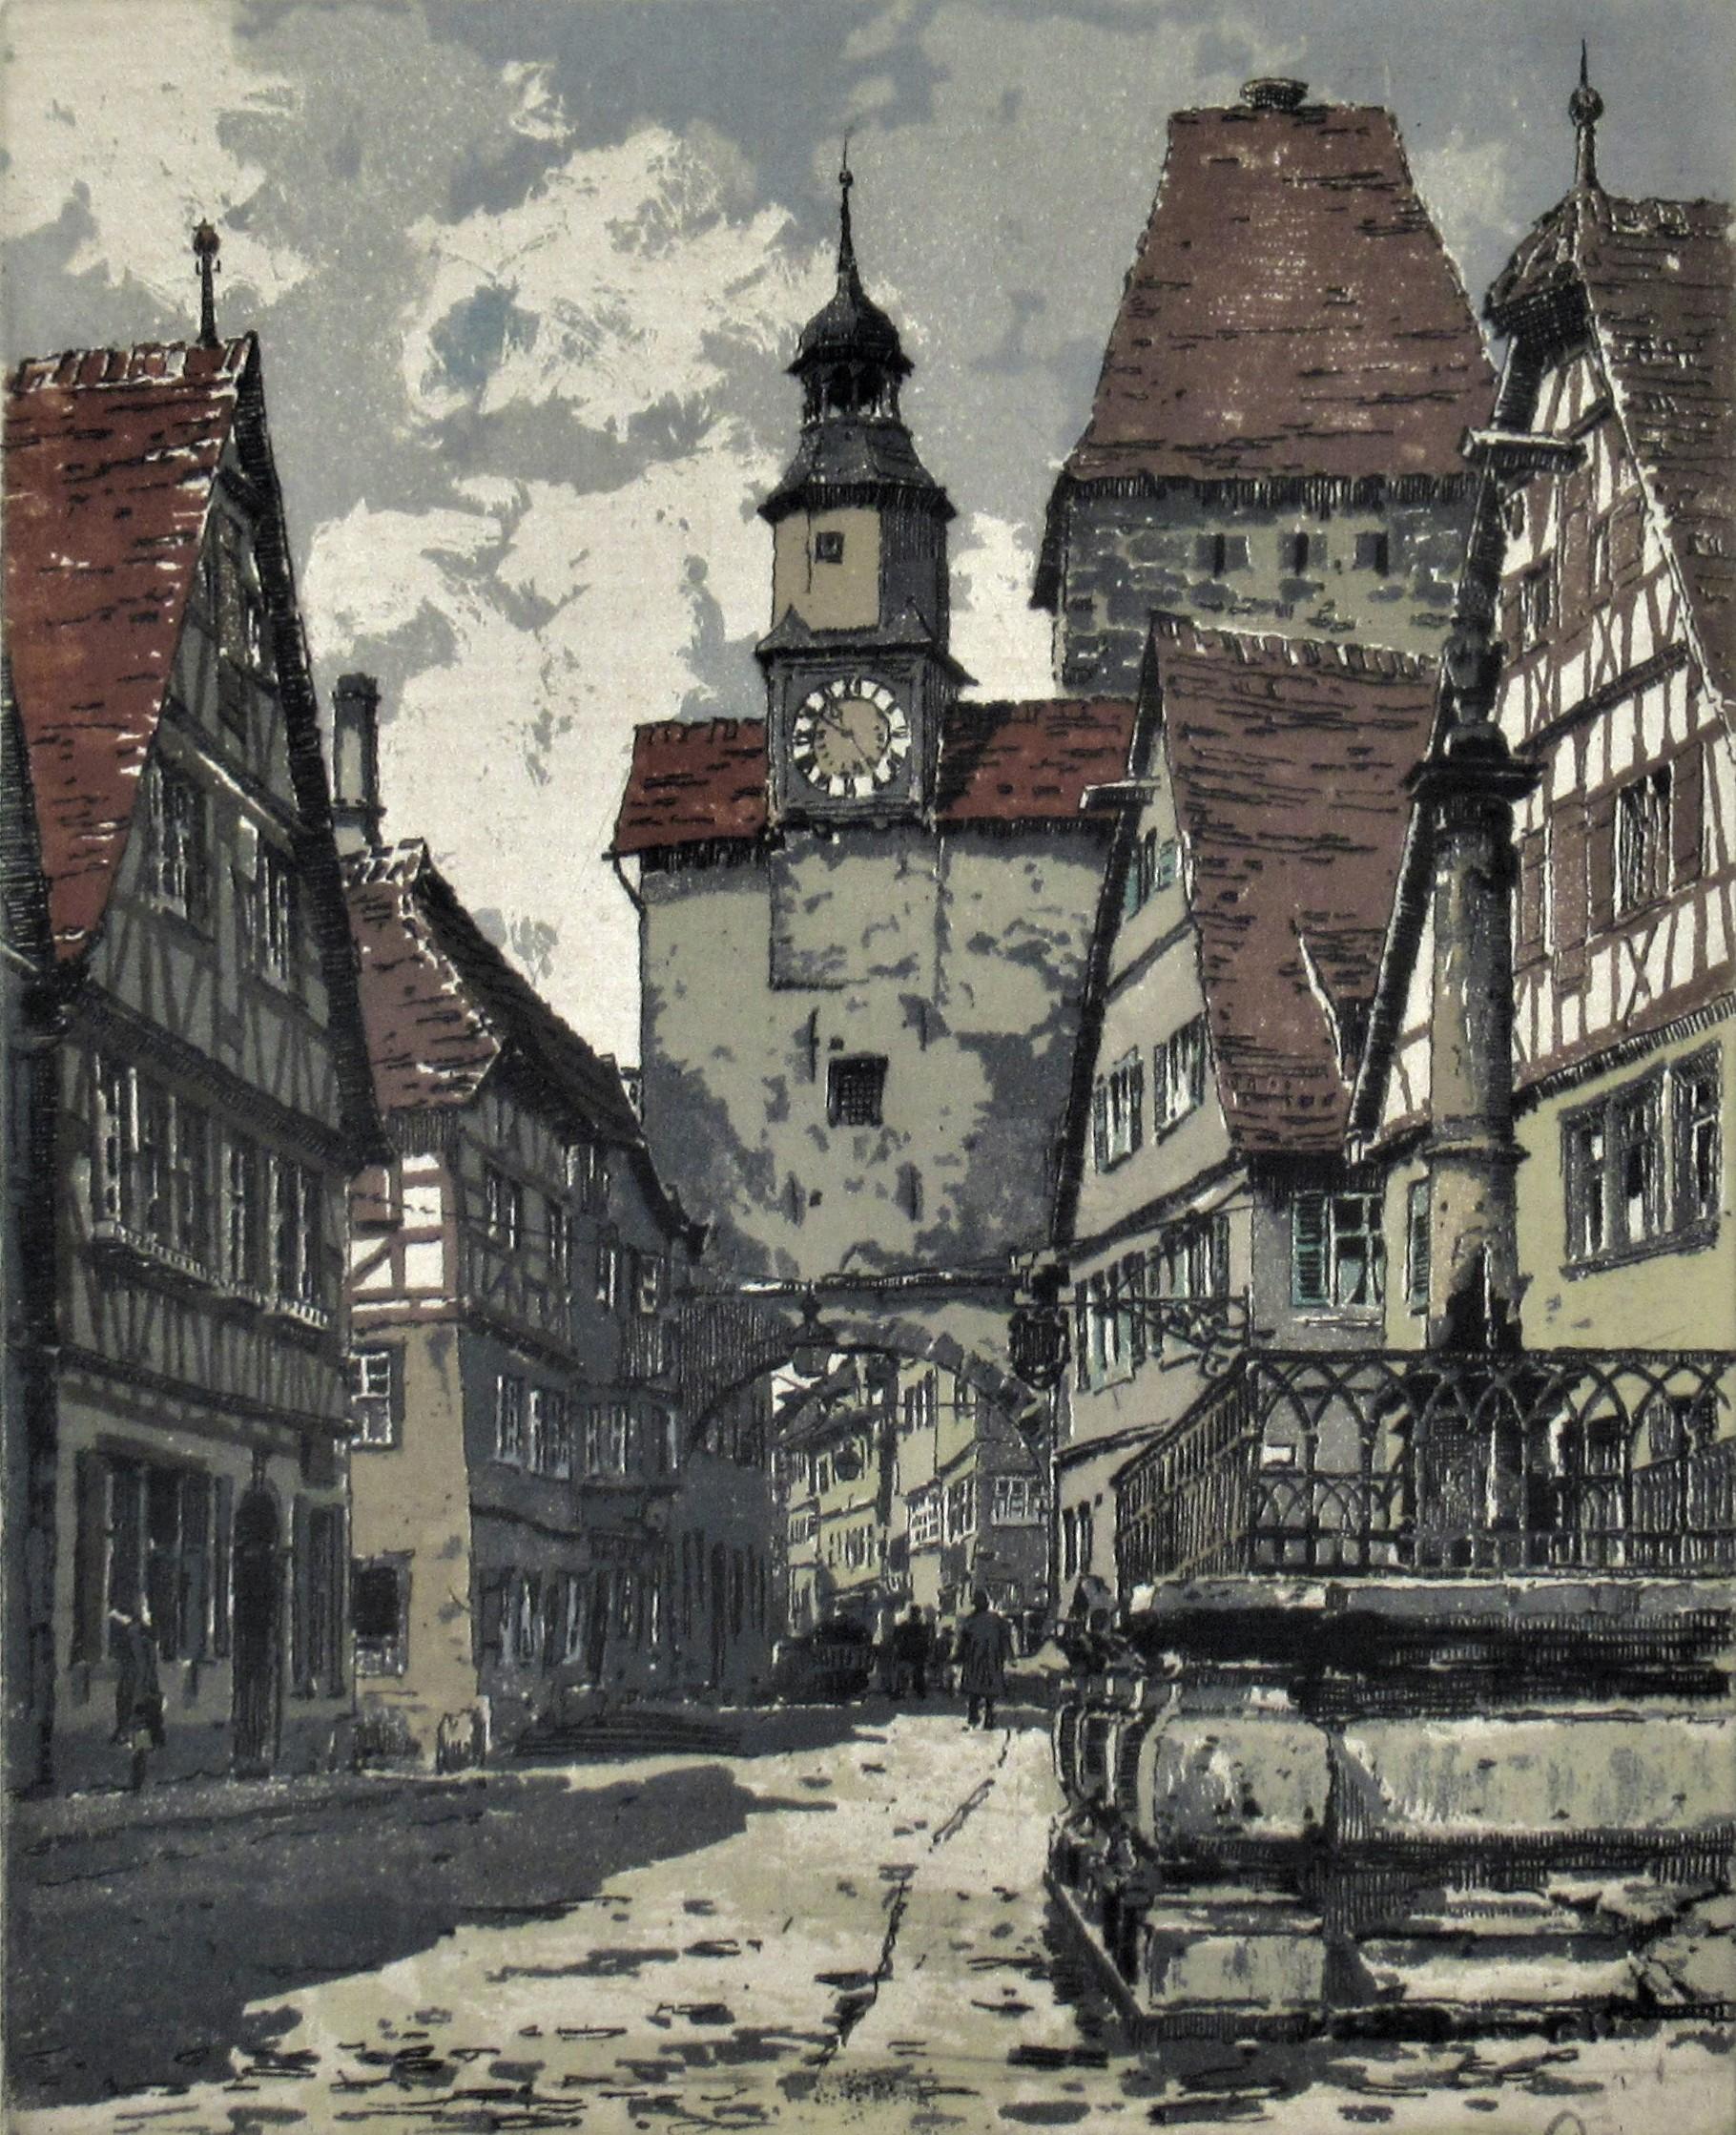 Rothenburg, Allemagne - Print de Hans Figura